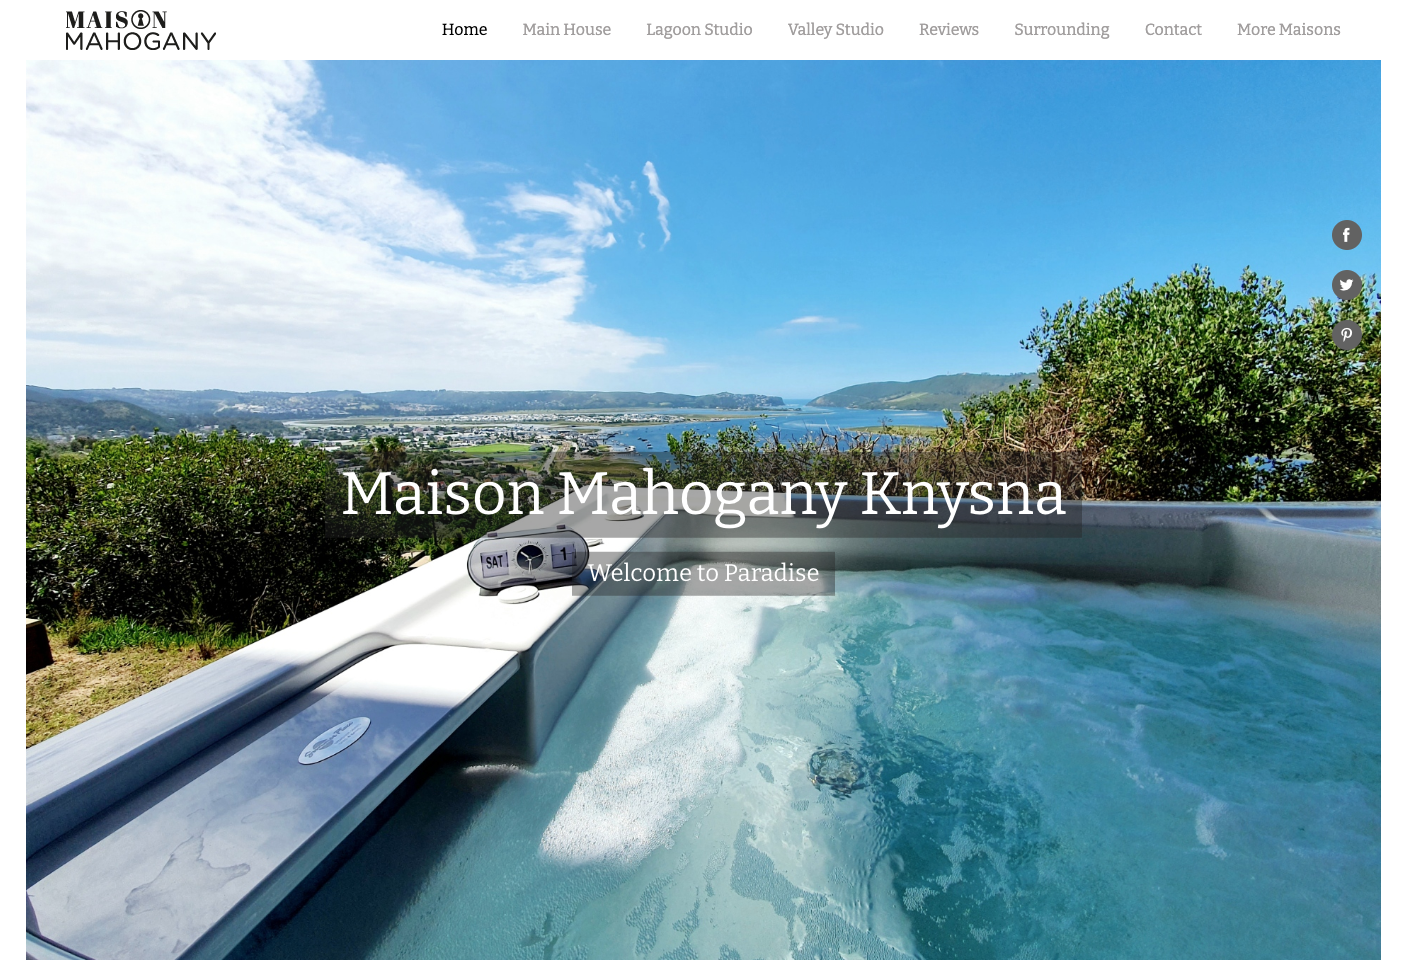 Maison Mahogany: Website